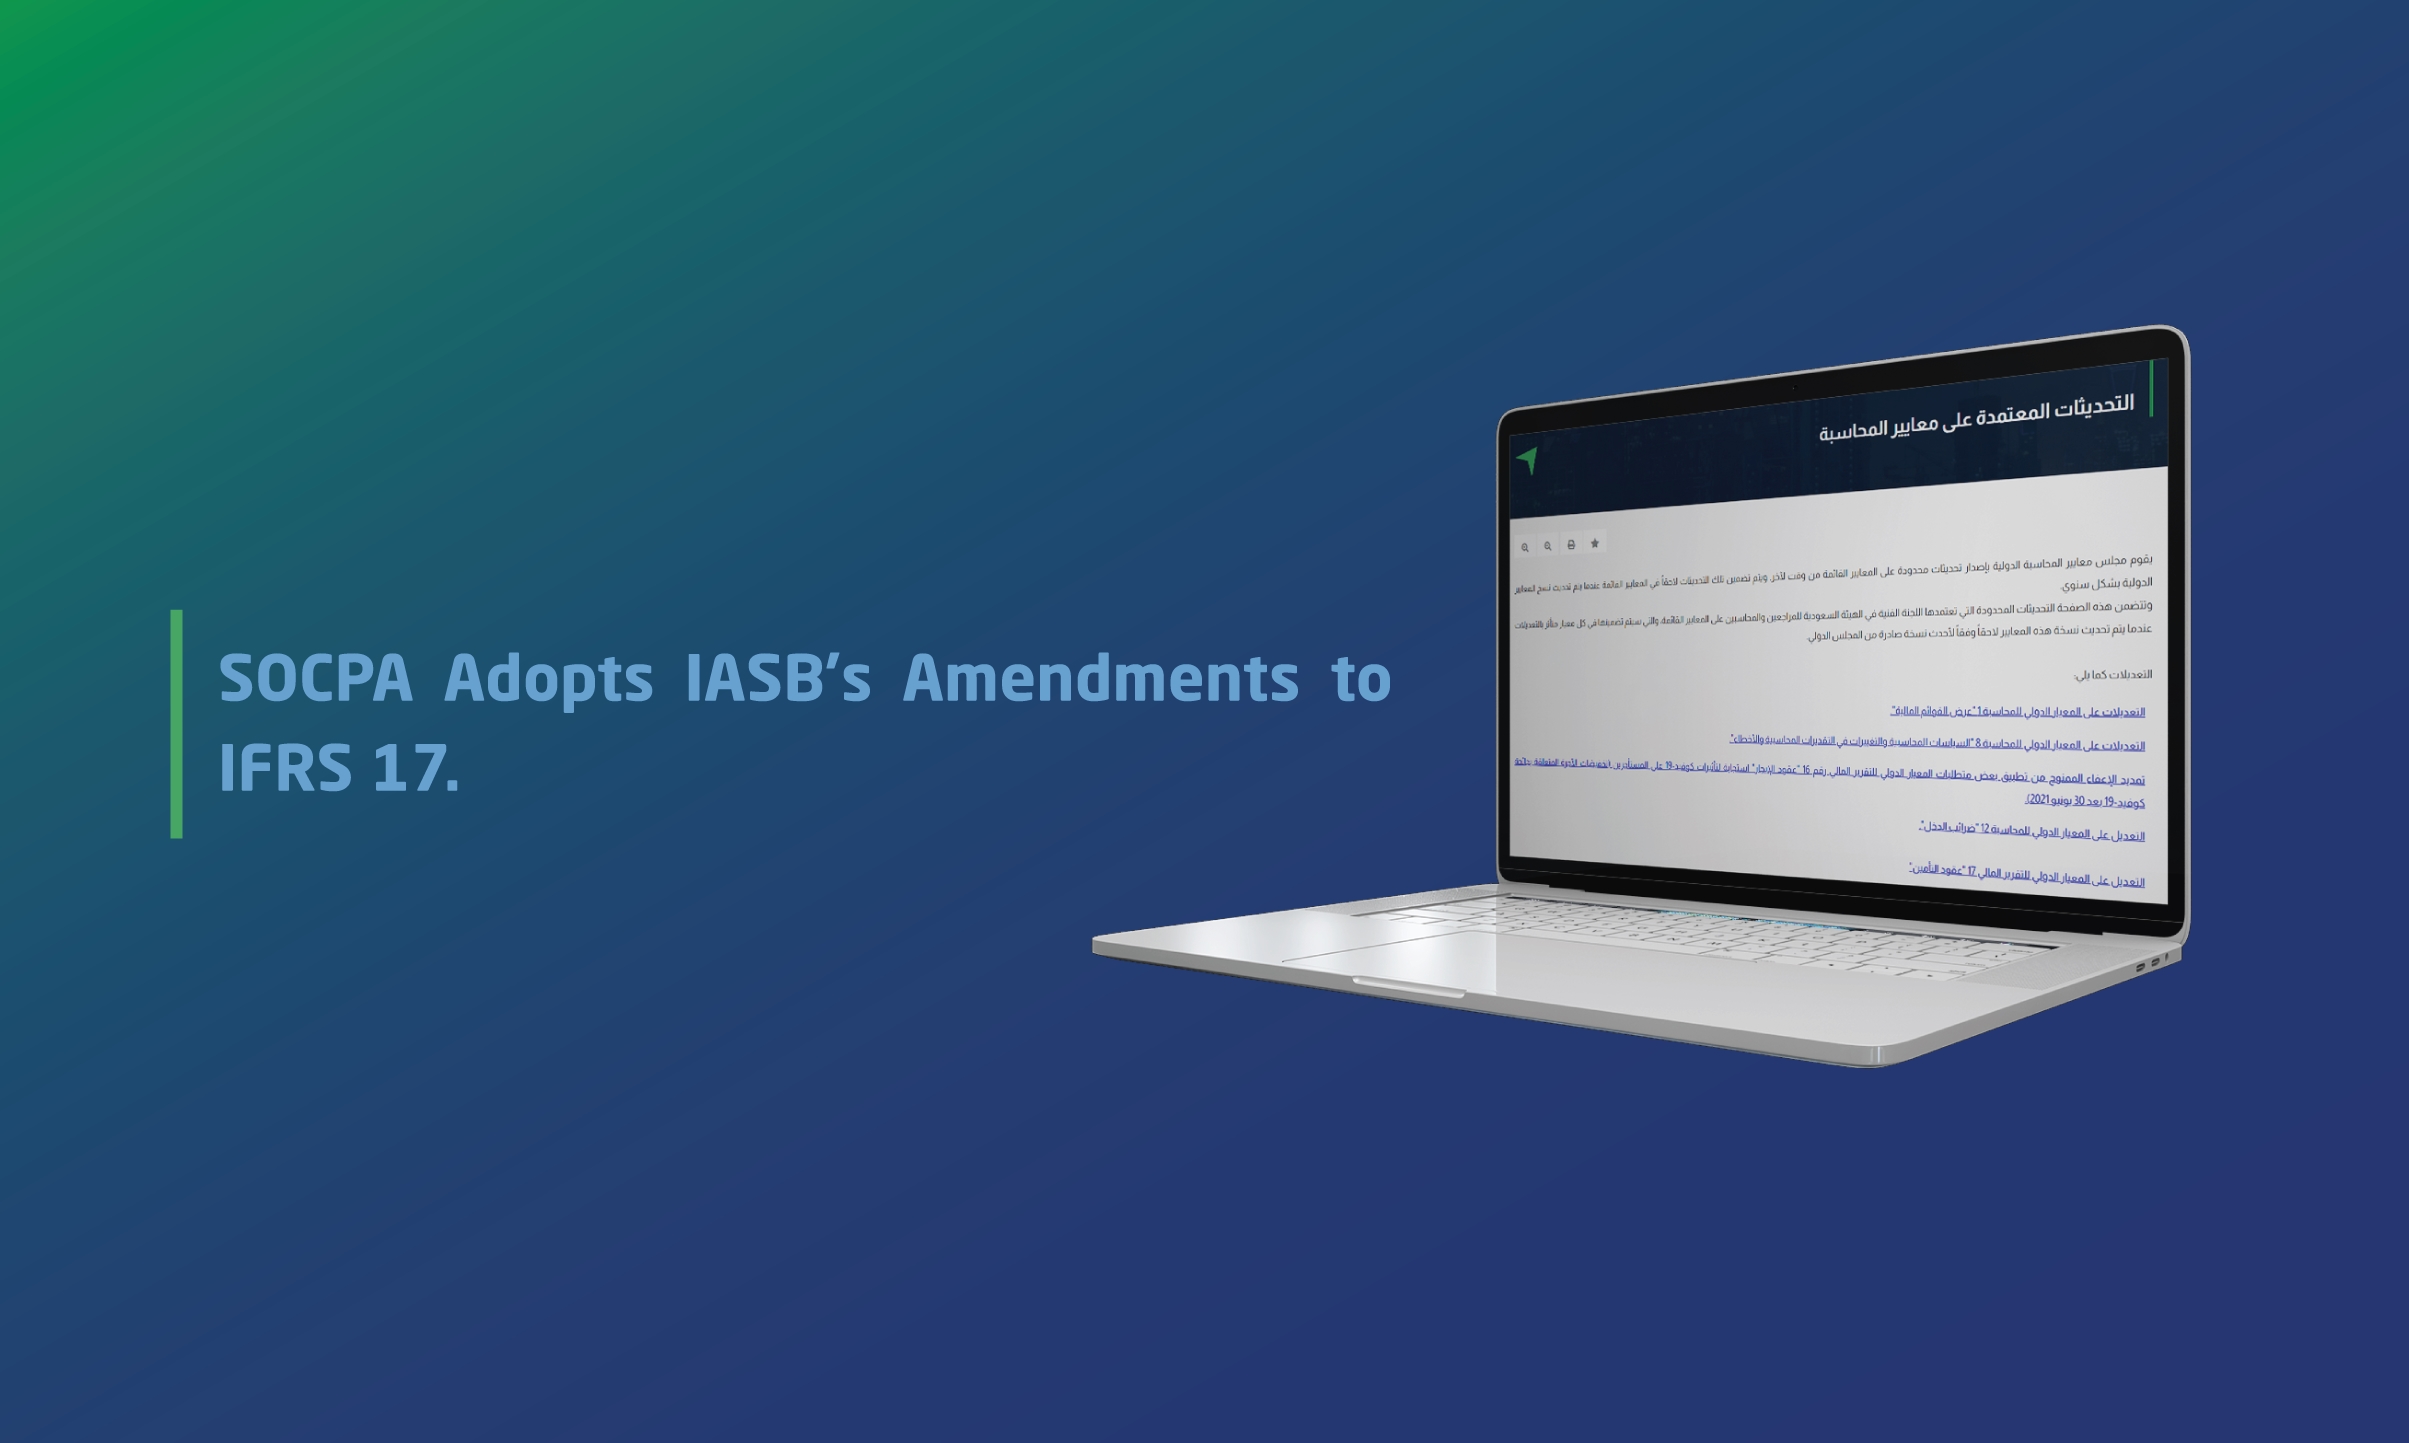 SOCPA Adopts IASB's Amendments to IFRS 17